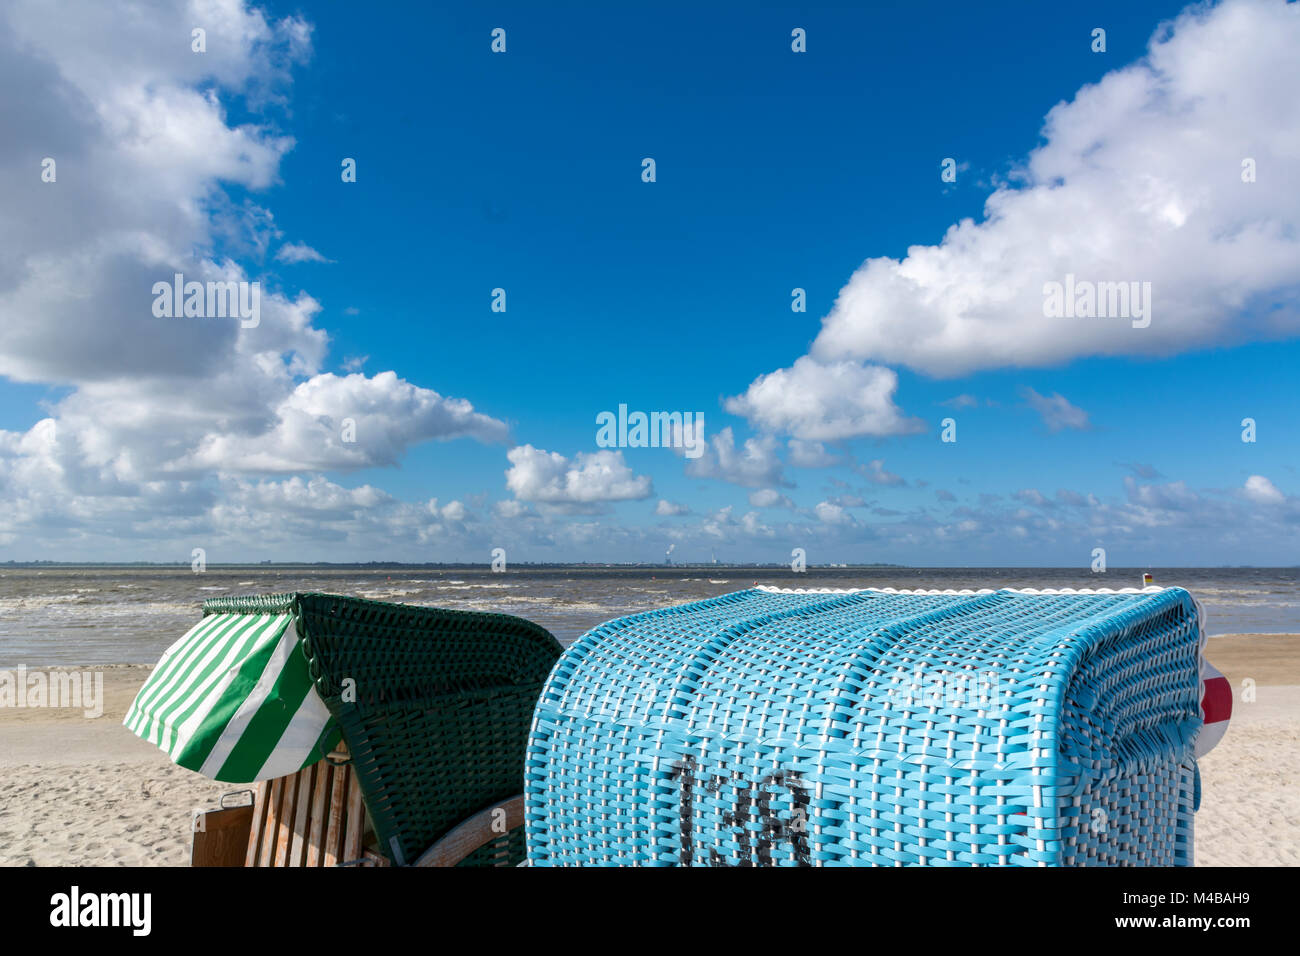 Am Strand von Dangast mit blauen Strandkörben Foto Stock